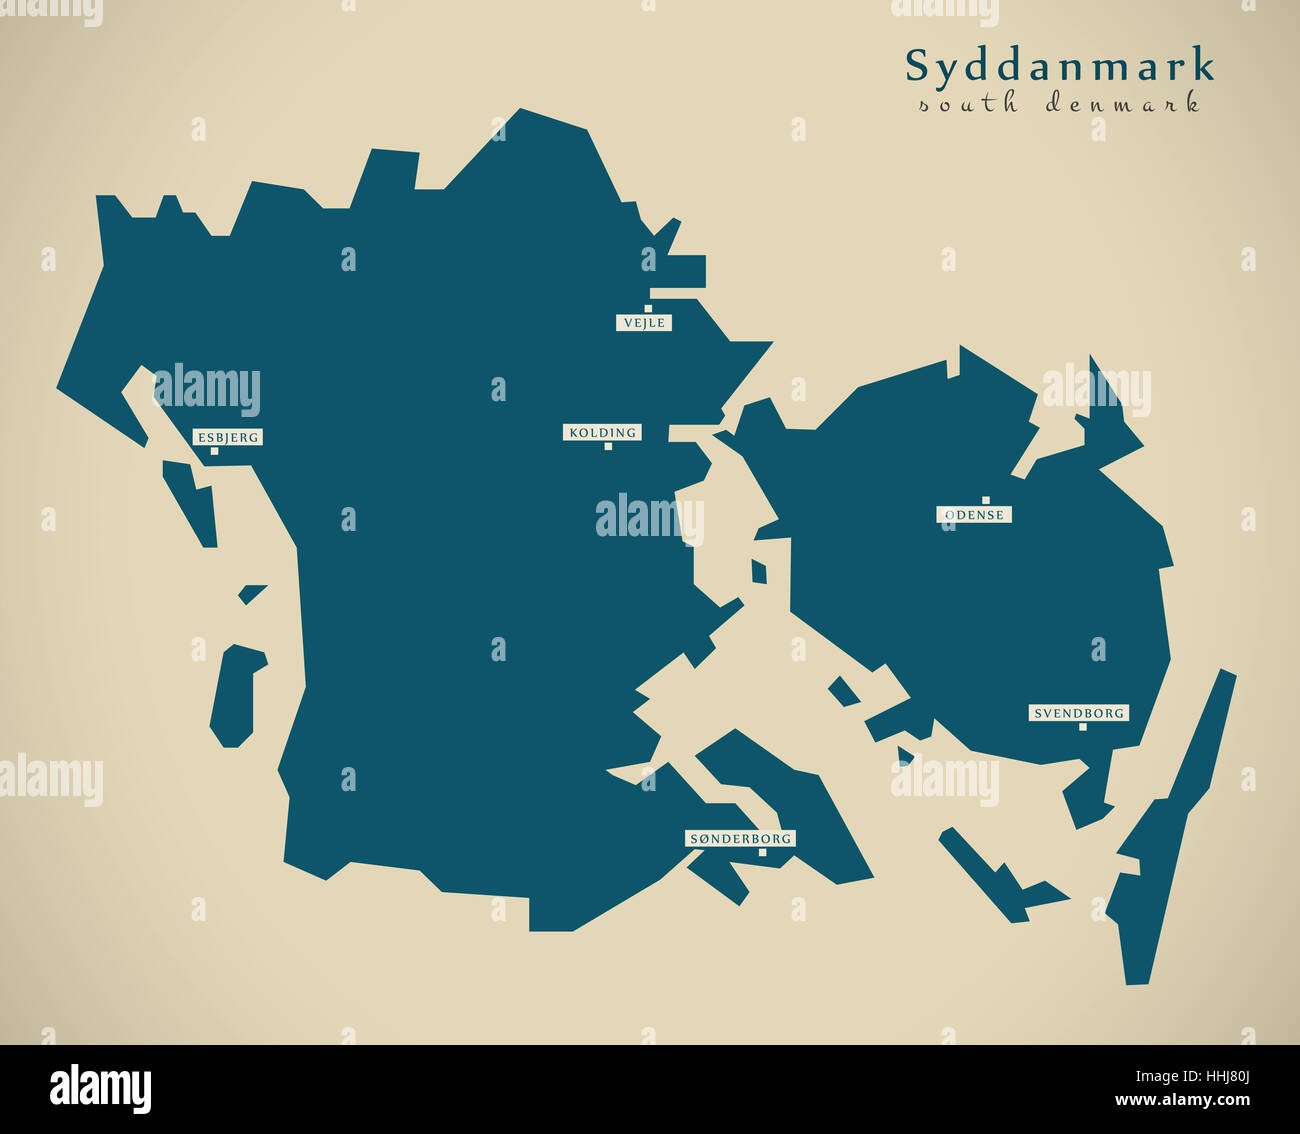 Mappa moderno - Syddanmark Danimarca DK illustrazione Foto Stock